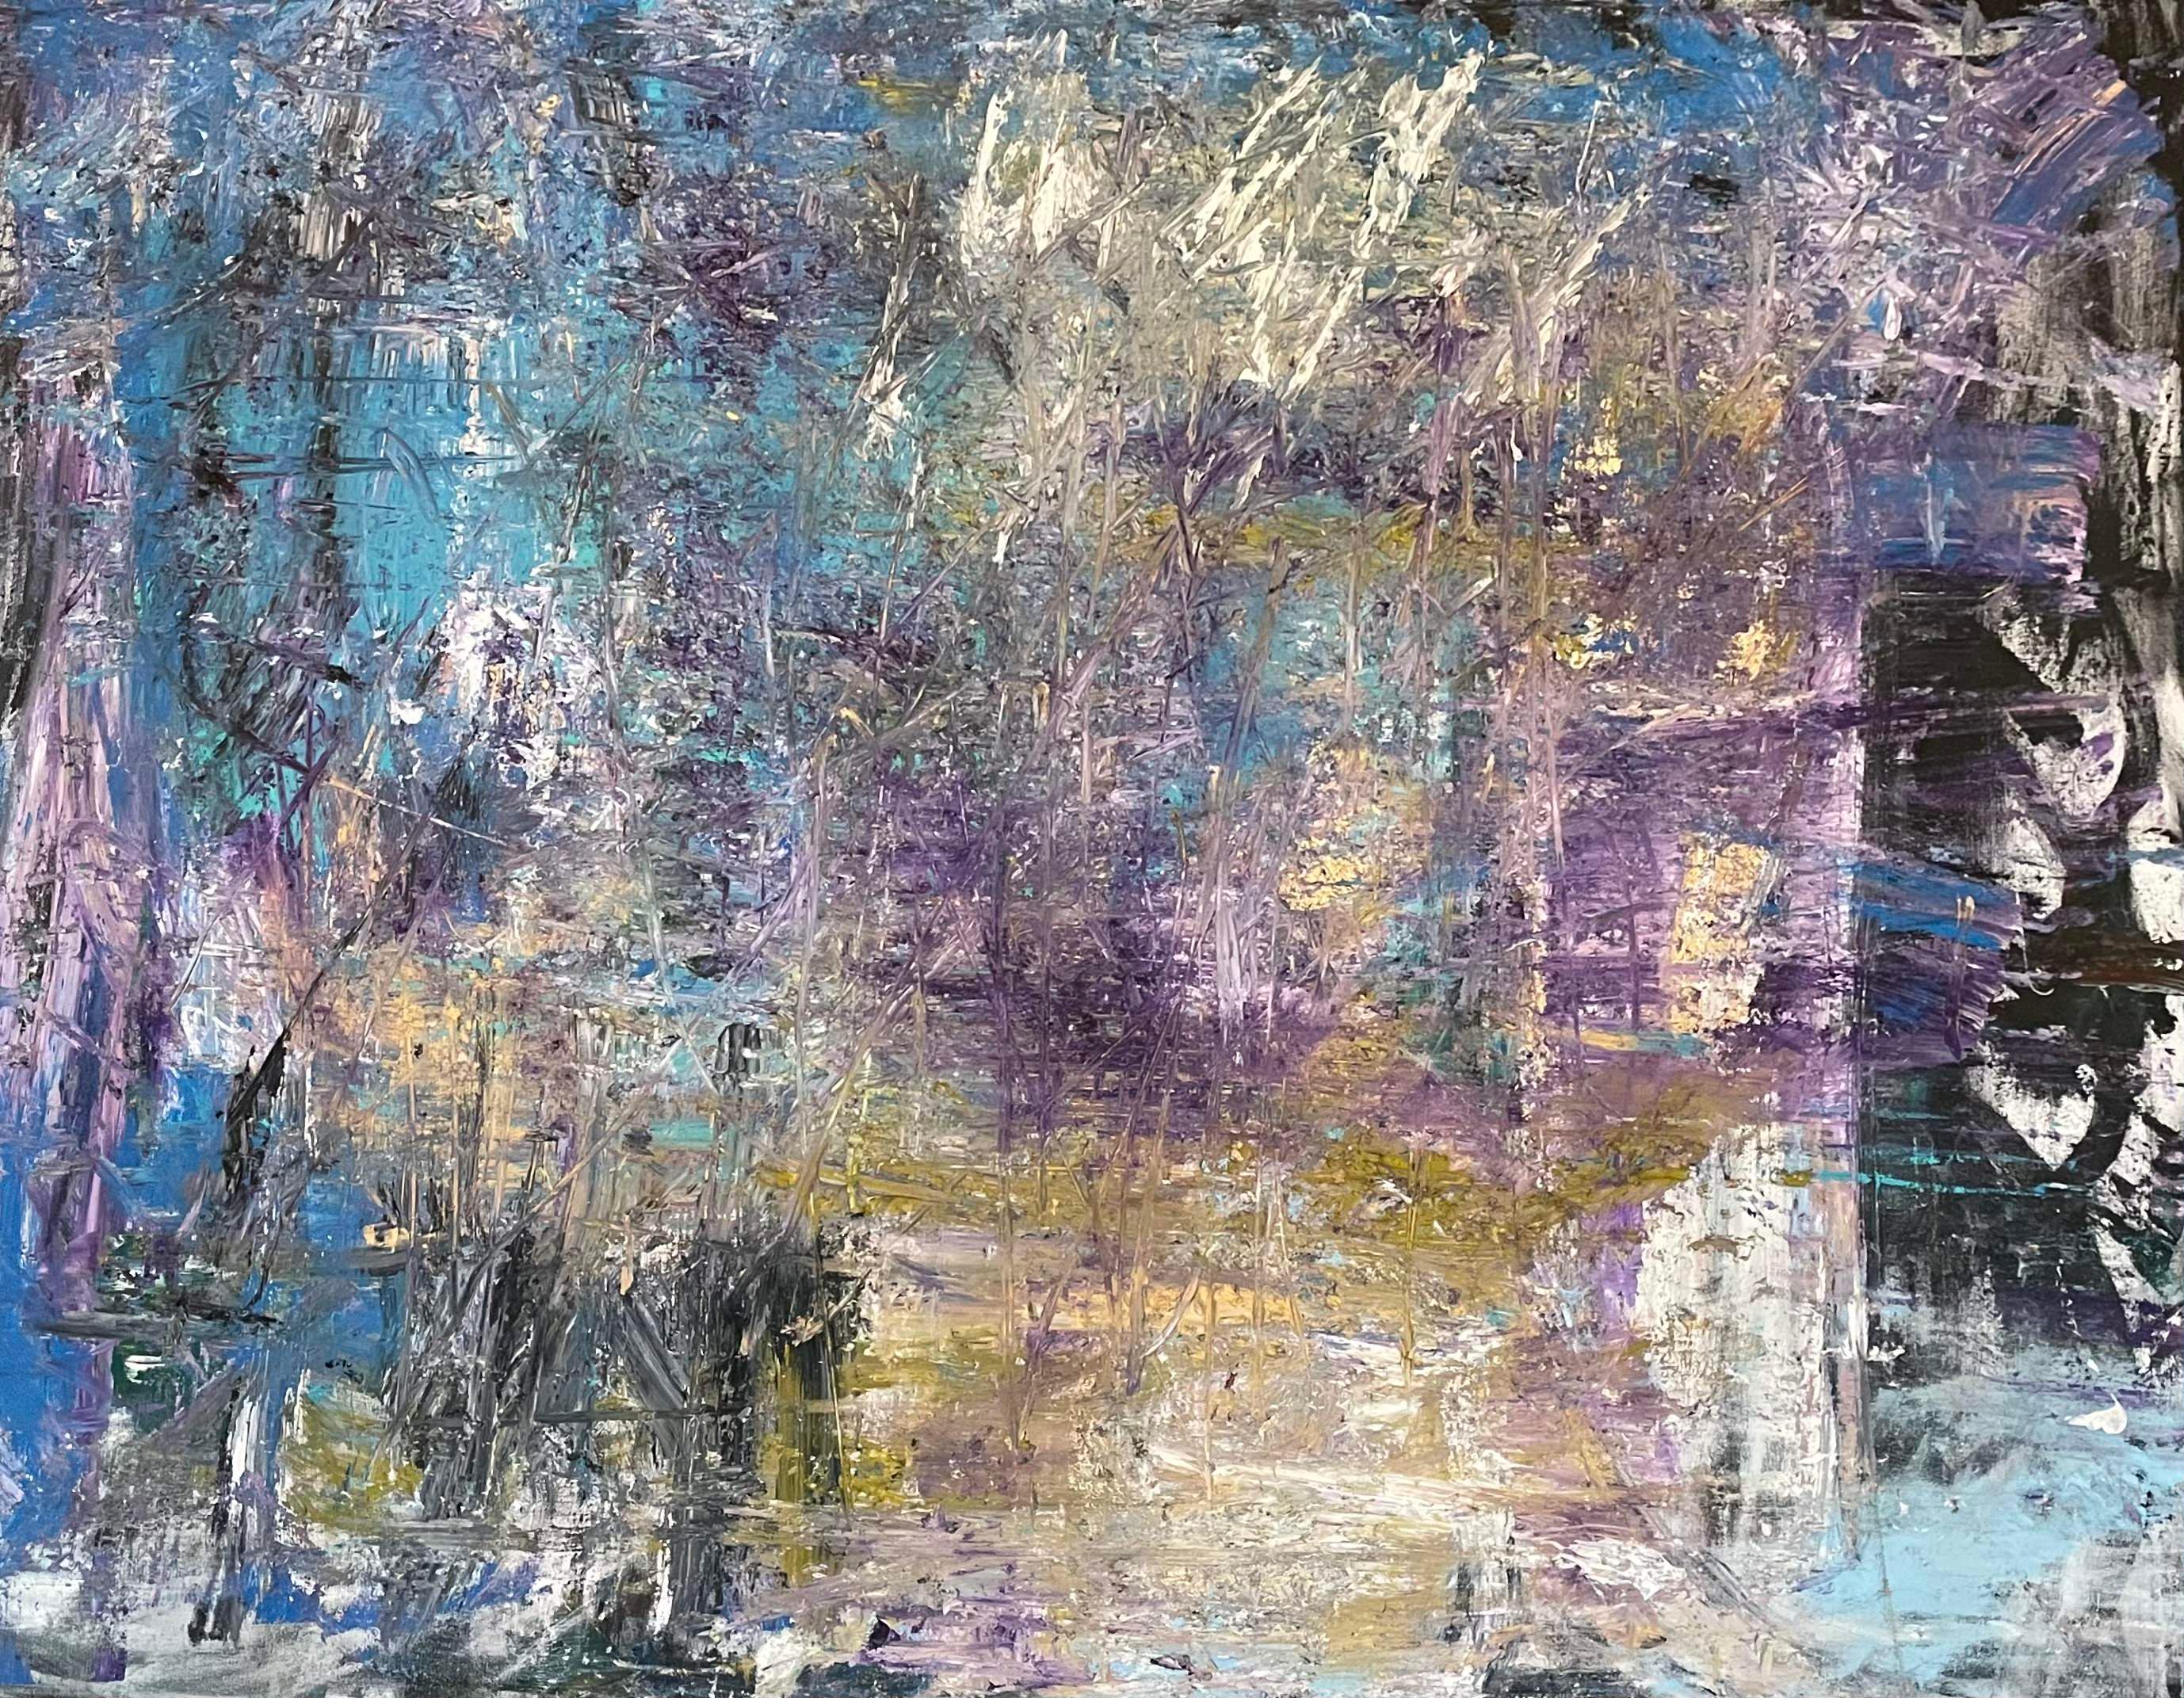 La peintre abstraite suédoise Frida Willis captive avec son chef-d'œuvre "Euphoria", une explosion d'énergie dynamique et de couleurs vibrantes. Dans ce tableau, des teintes de bleu, de jaune, de violet, de blanc et des touches de noir dansent